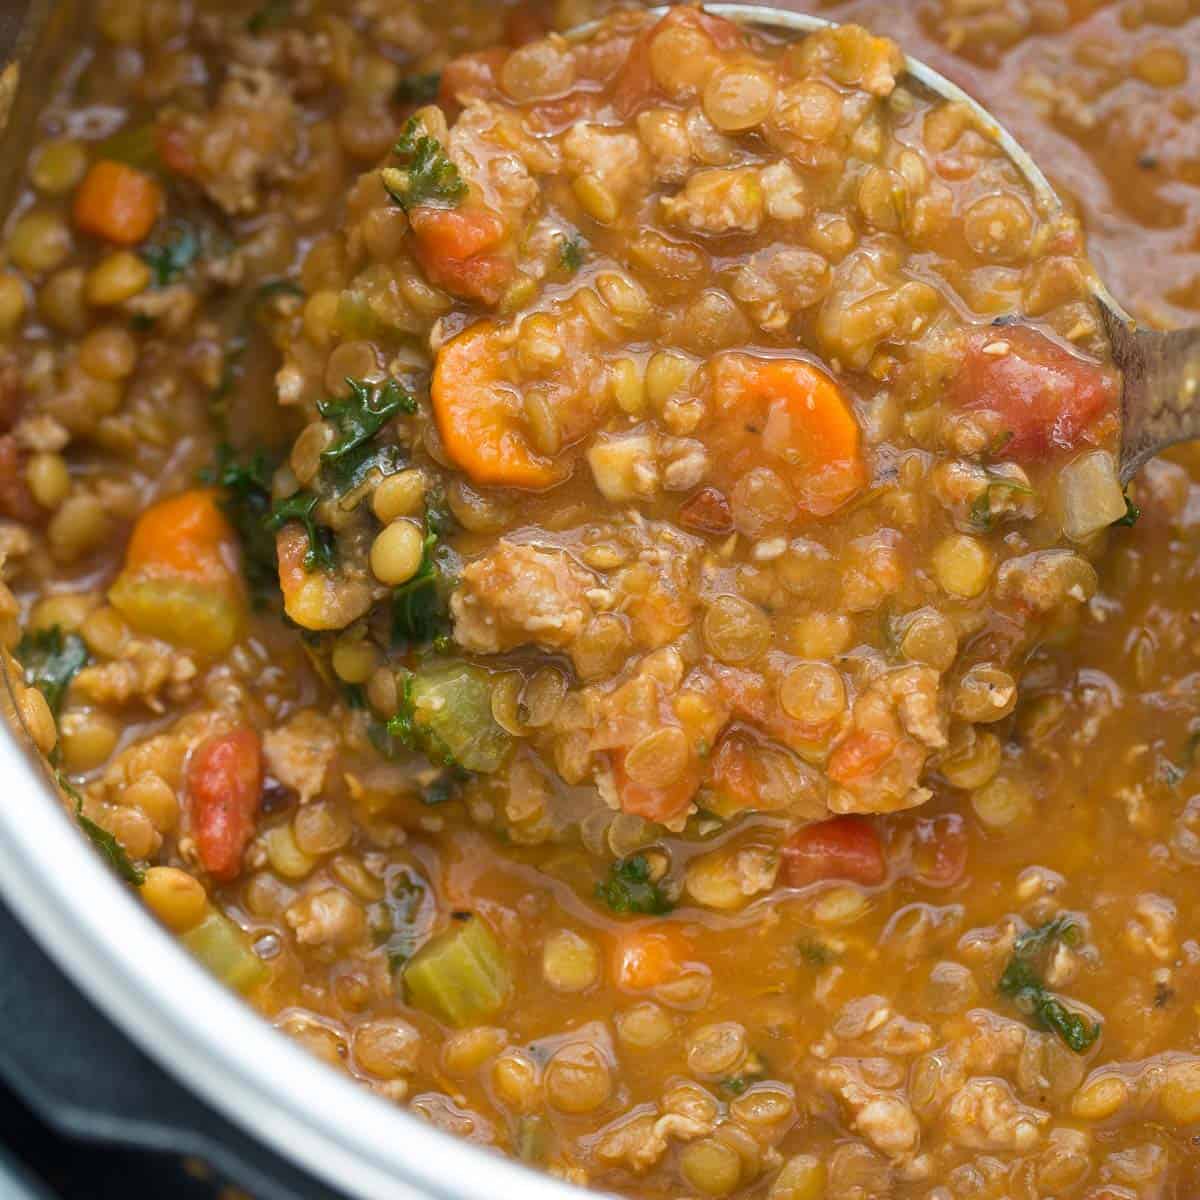 https://meaningfuleats.com/wp-content/uploads/2017/12/instant-pot-lentil-soup.jpg